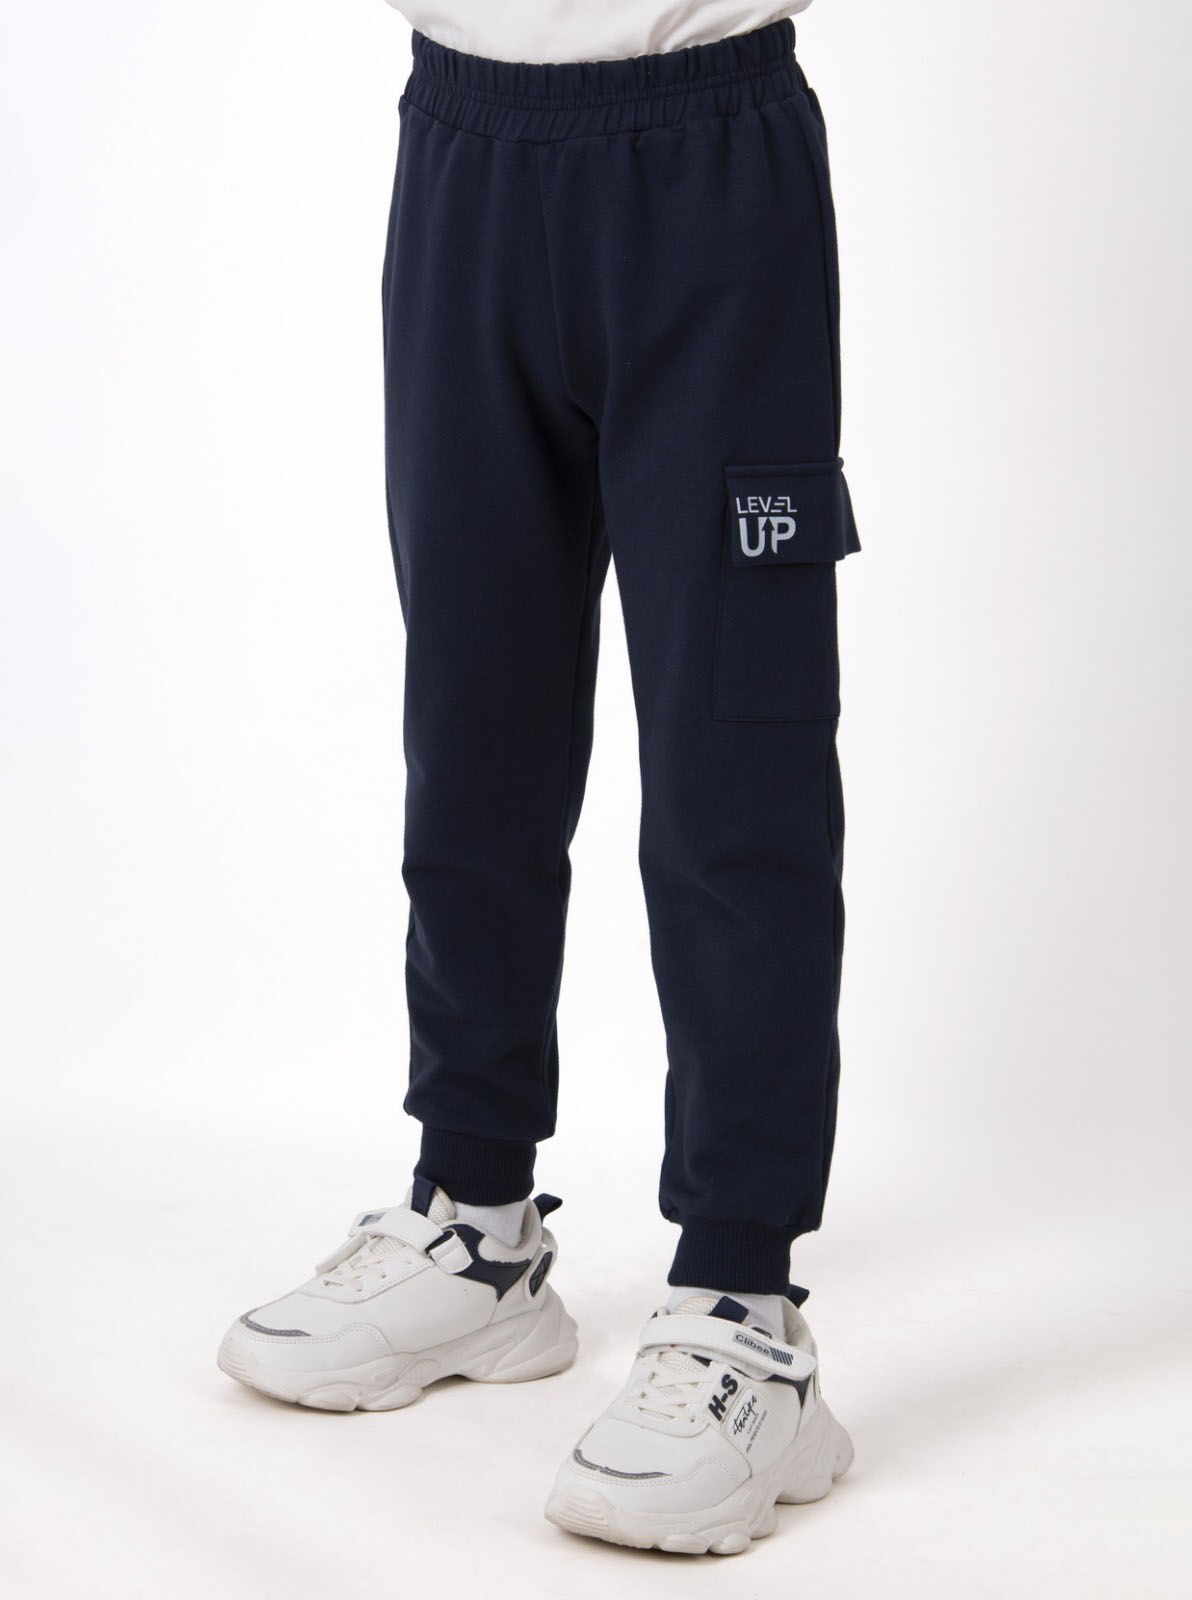 Спортивные штаны Mevis темно-синие 4539-03 - цена